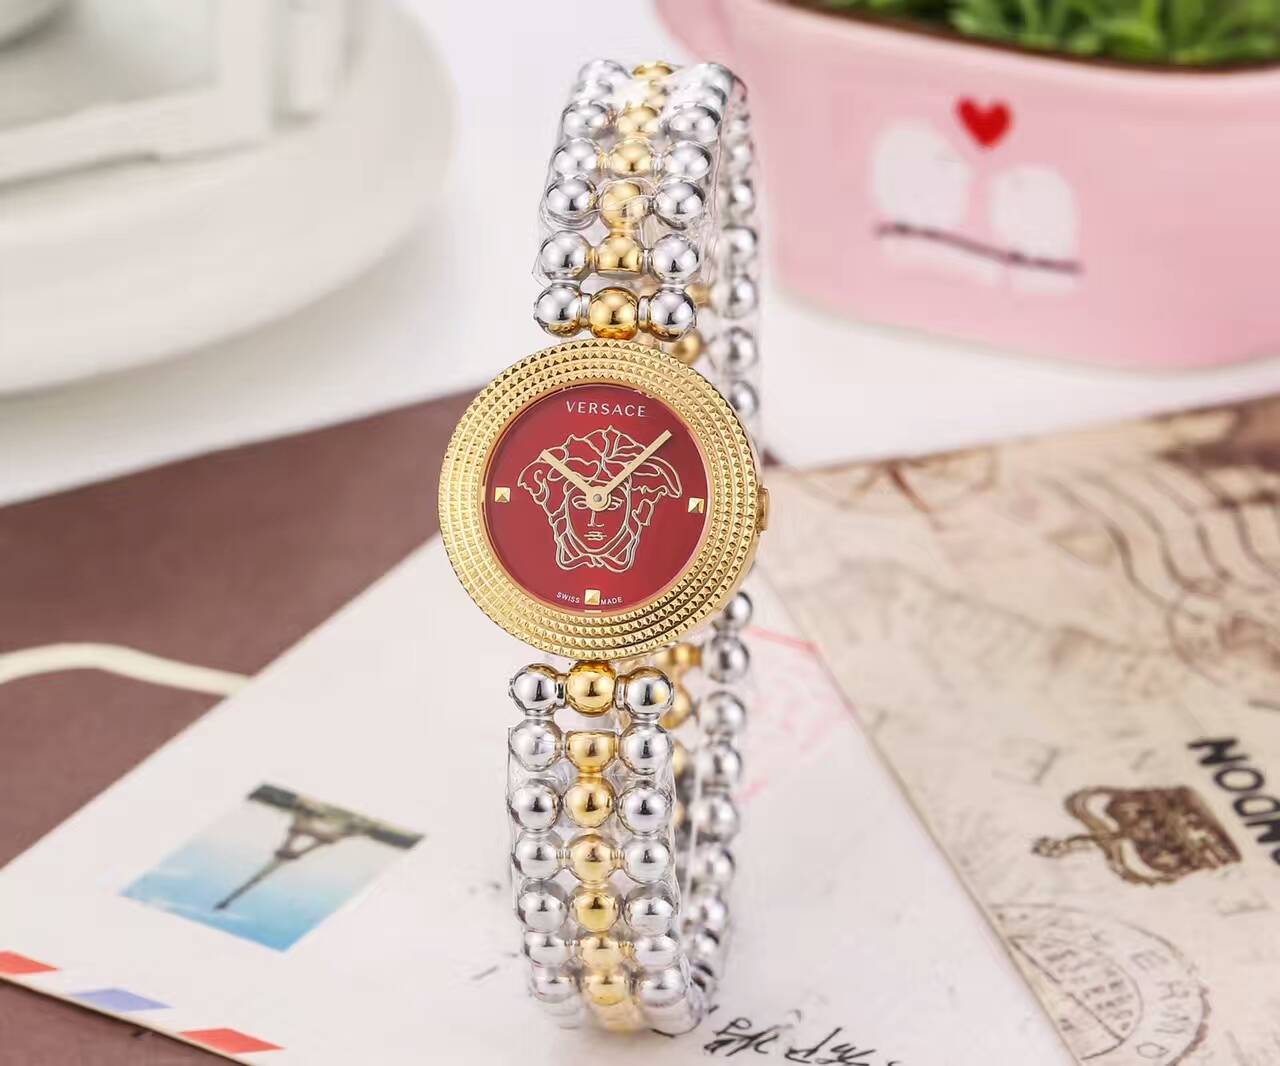 範思哲 精品女性腕錶 藍寶石鏡面 亮麗 精鋼錶帶 進口石英機芯-rhid-117405